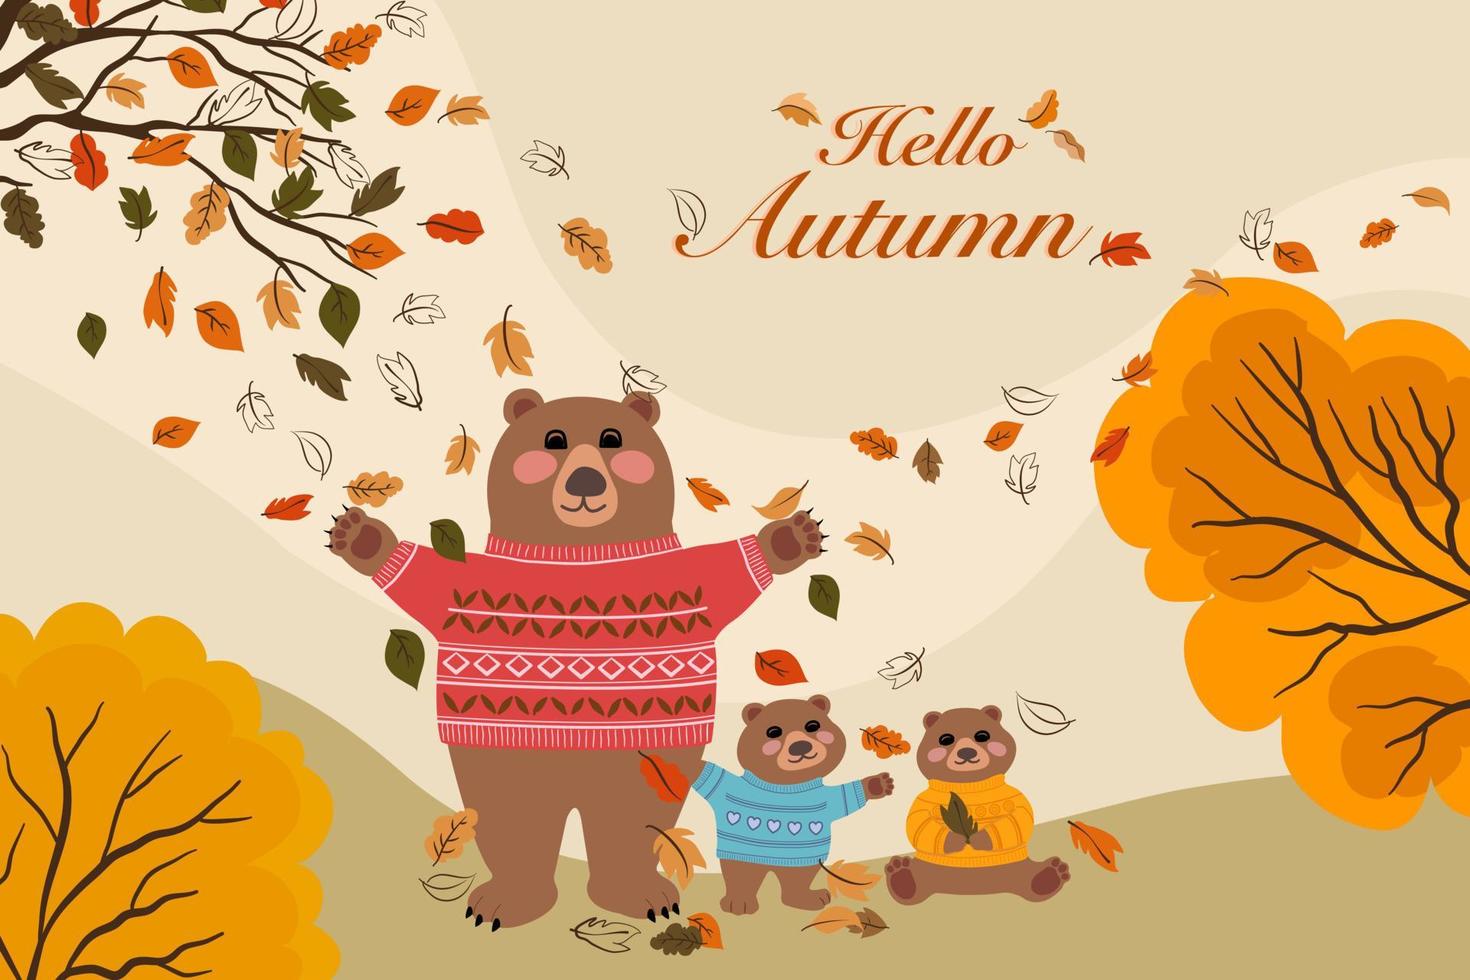 desenho vetorial da família do urso pardo celebrou a temporada de outono, mãe ursa e 2 filhotes vestindo suéter na grama sob a laranjeira do outono e folhas coloridas soprando com olá textos de outono vetor